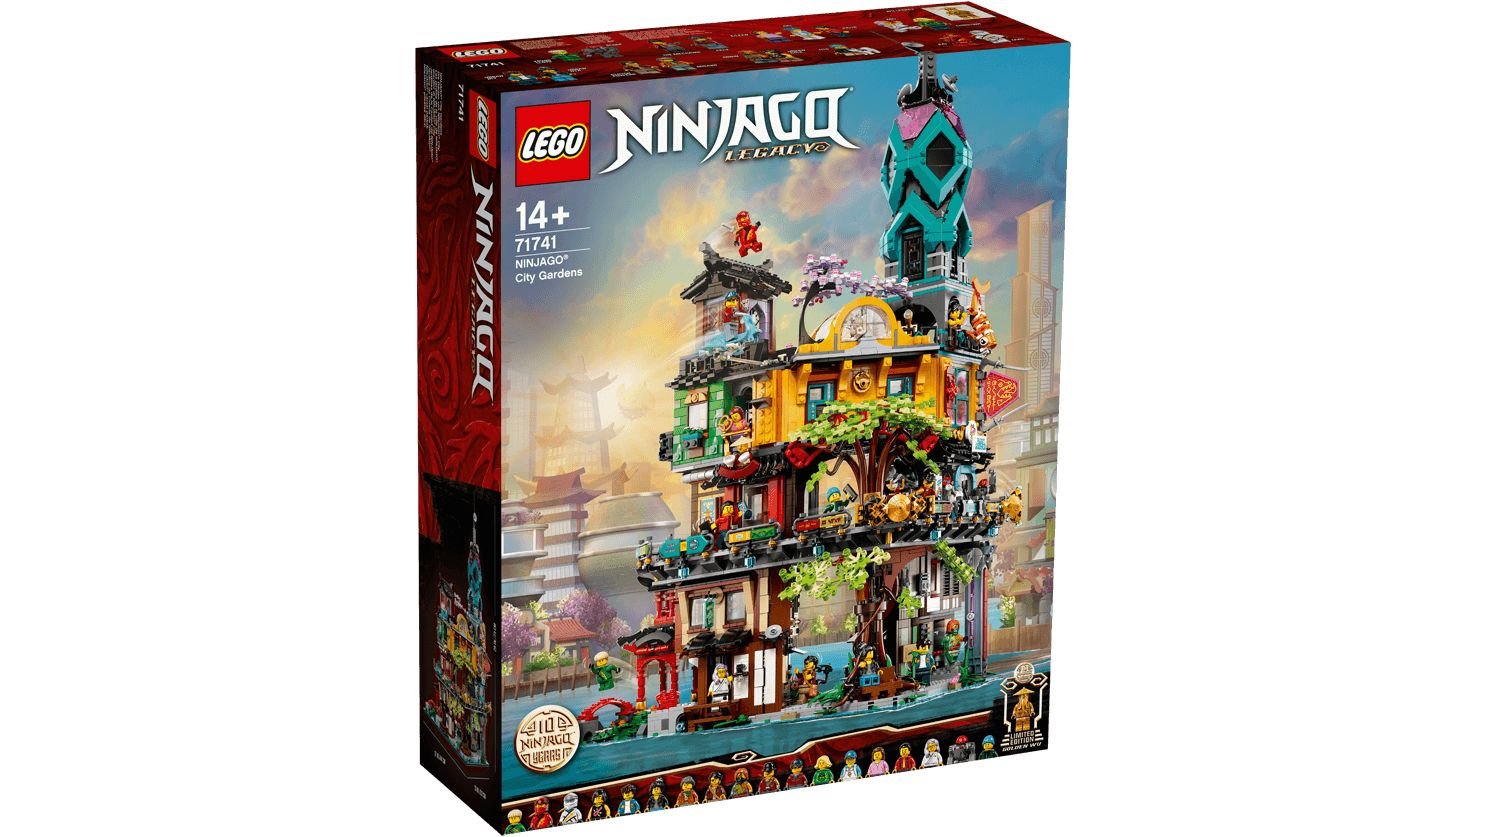 LEGO Ninjago 71741 Die Gärten von NINJAGO® City LEGO_71741_Box1_v29_1488.jpg